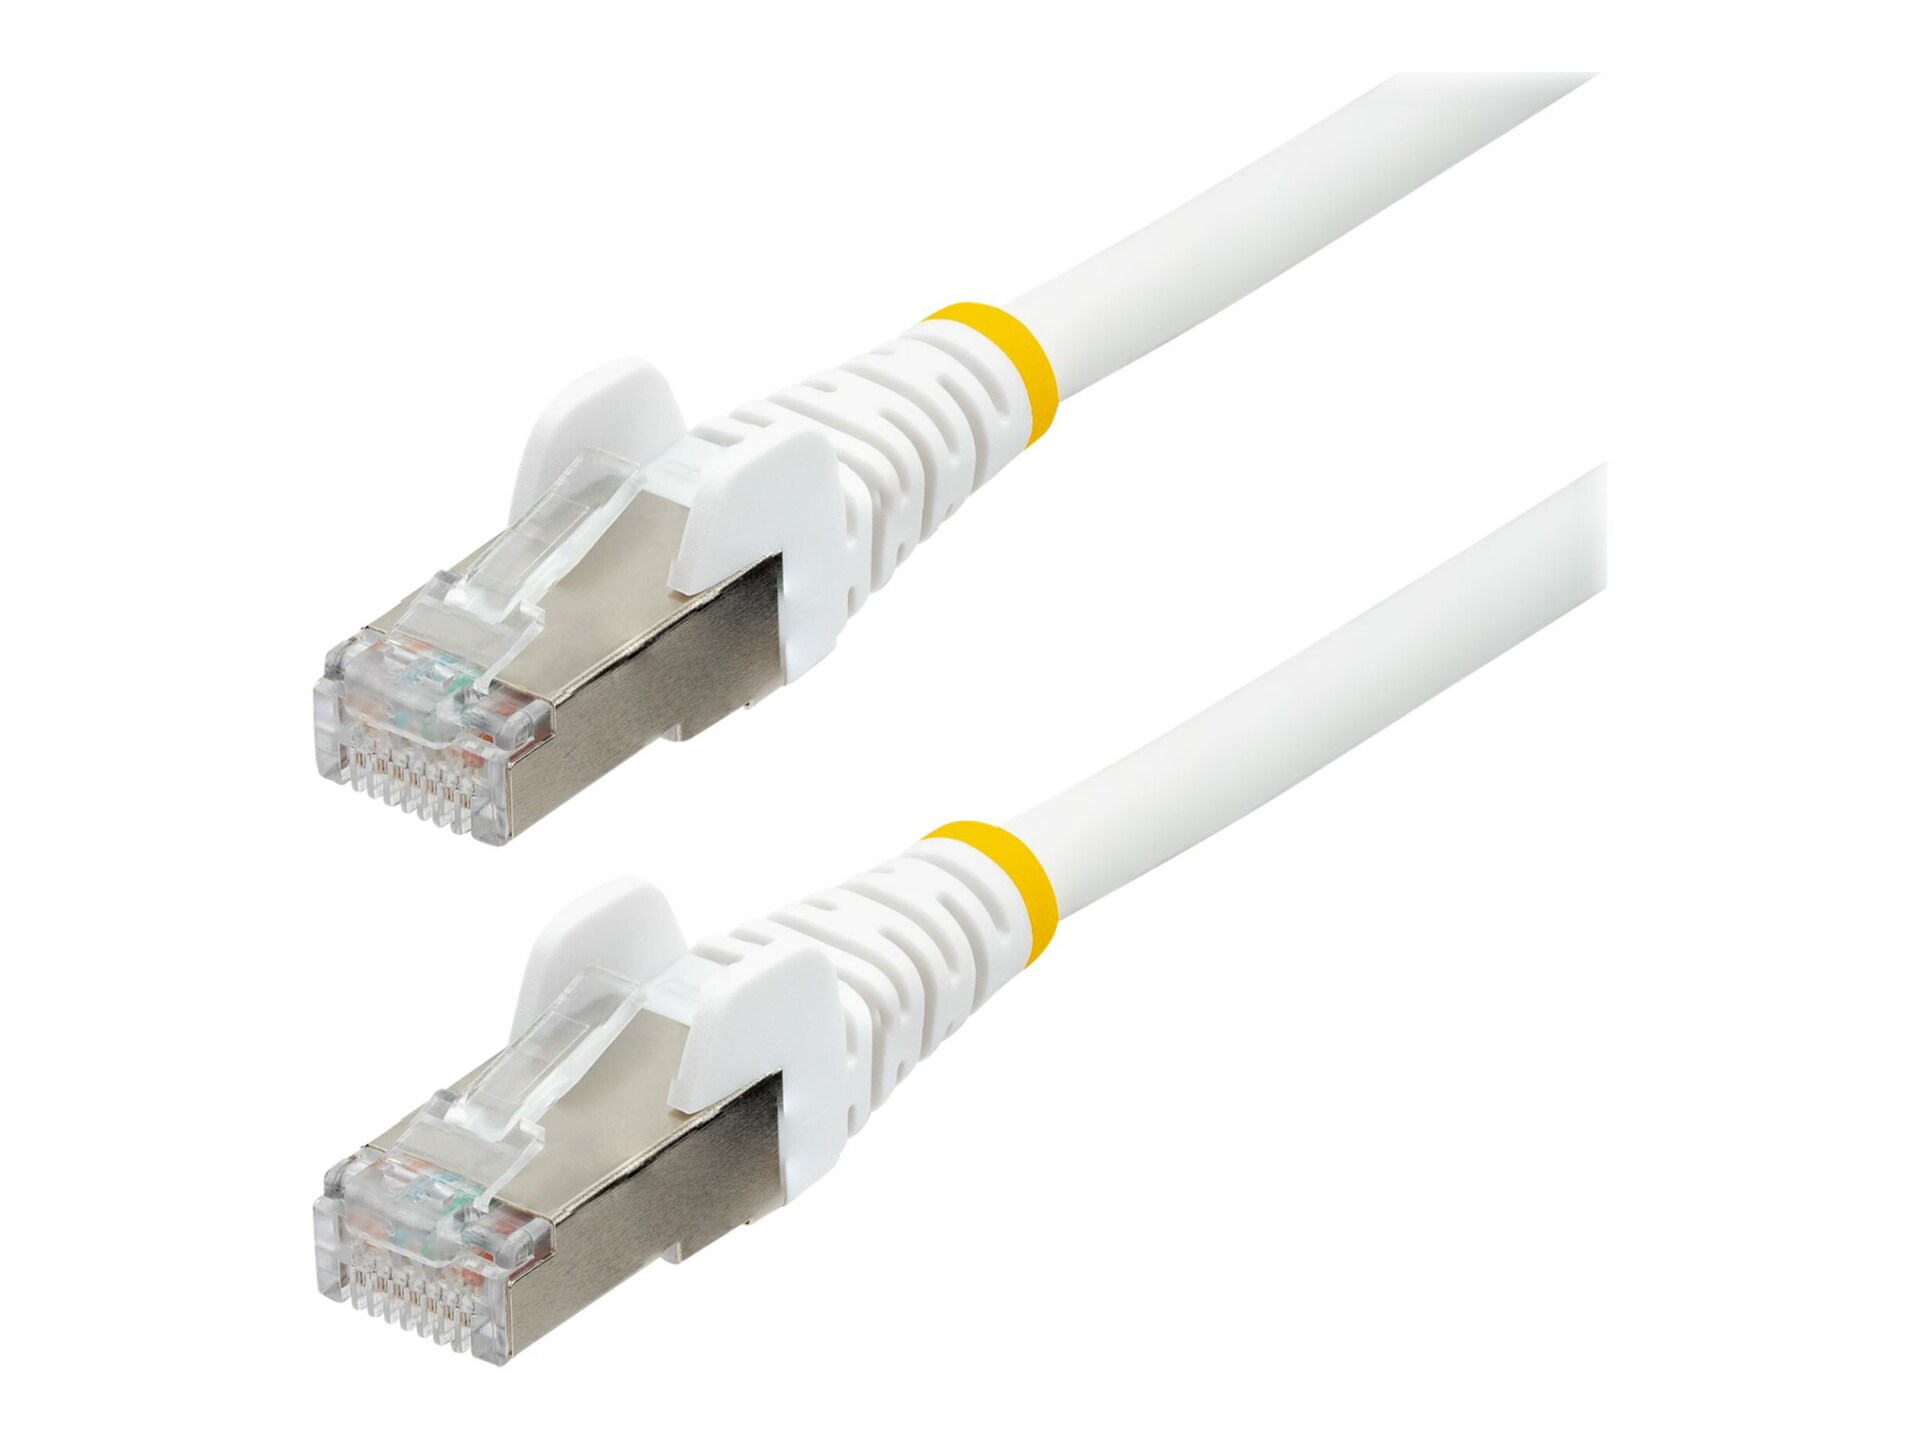 StarTech.com 5ft CAT6a Ethernet Cable, White Low Smoke Zero Halogen (LSZH)